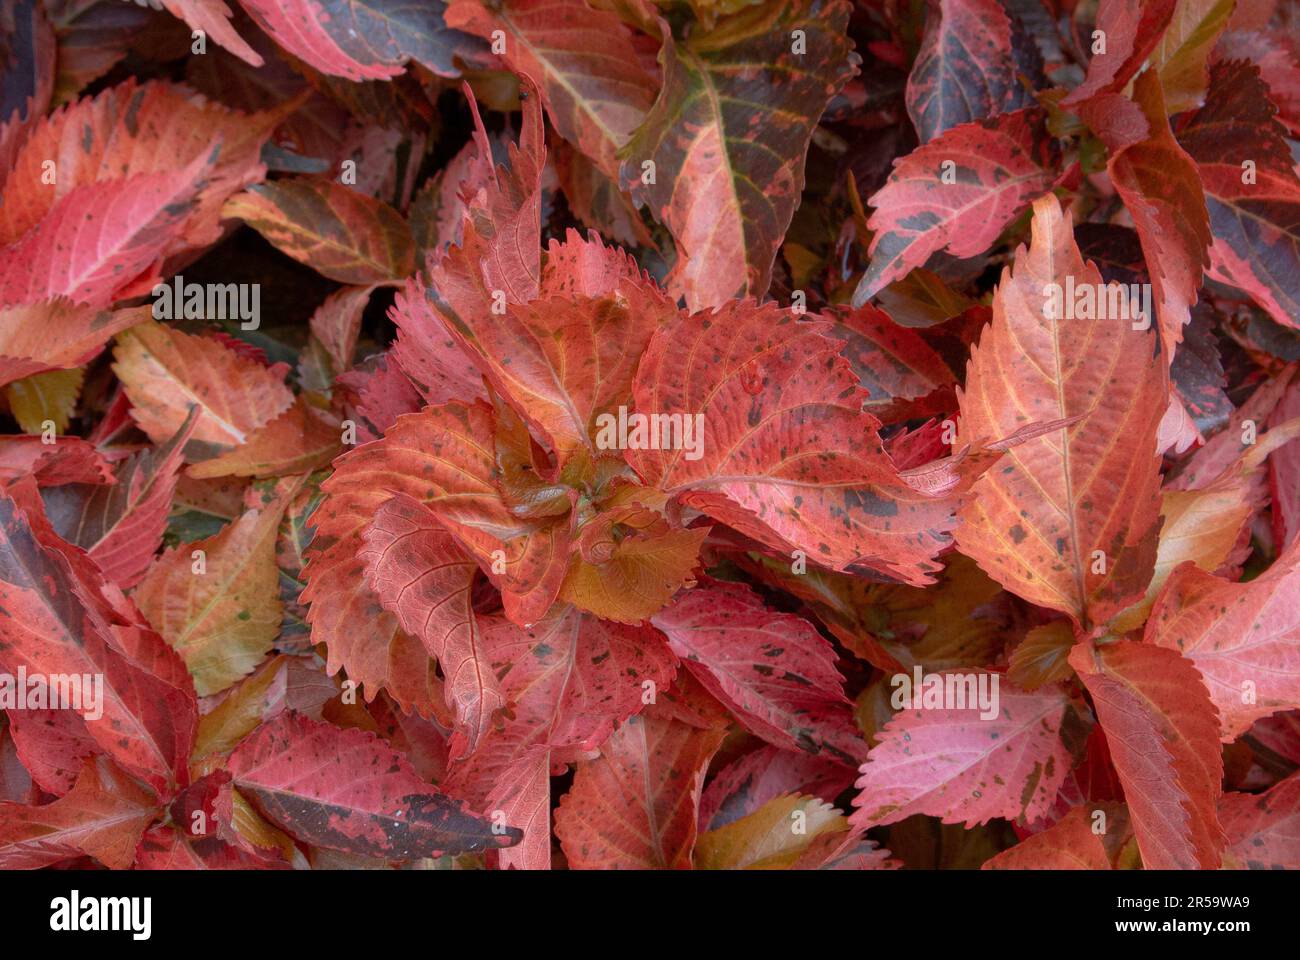 Couleur vive des feuilles d'Acalypha Wilkesiana, les noms communs sont Copperleaf et Jacob's Coat. Banque D'Images